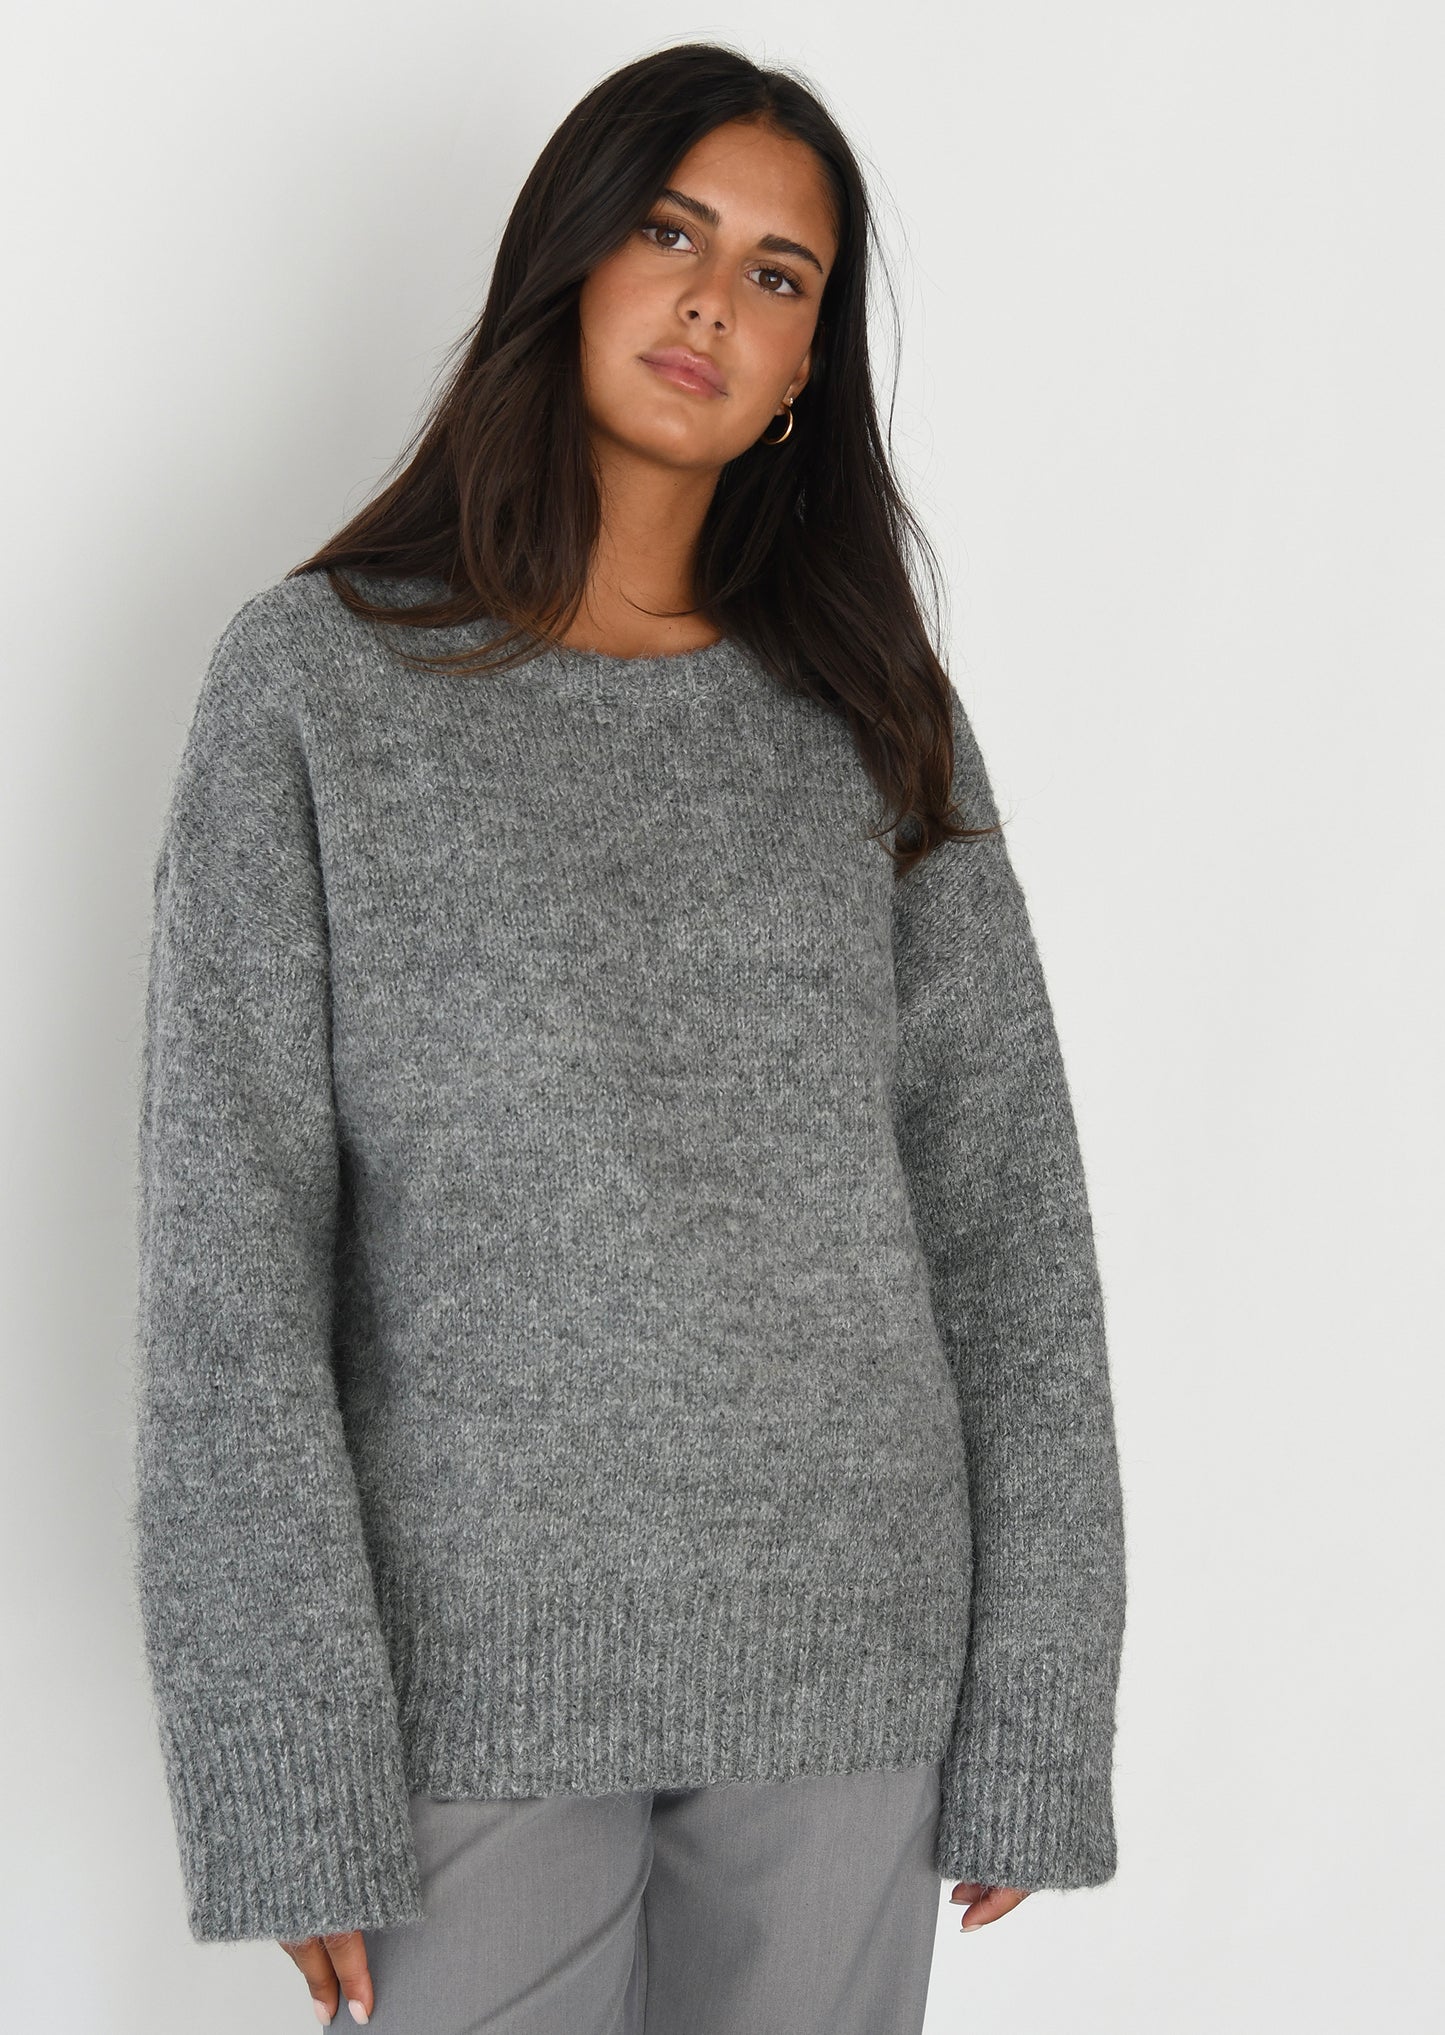 Oversize knit jumper